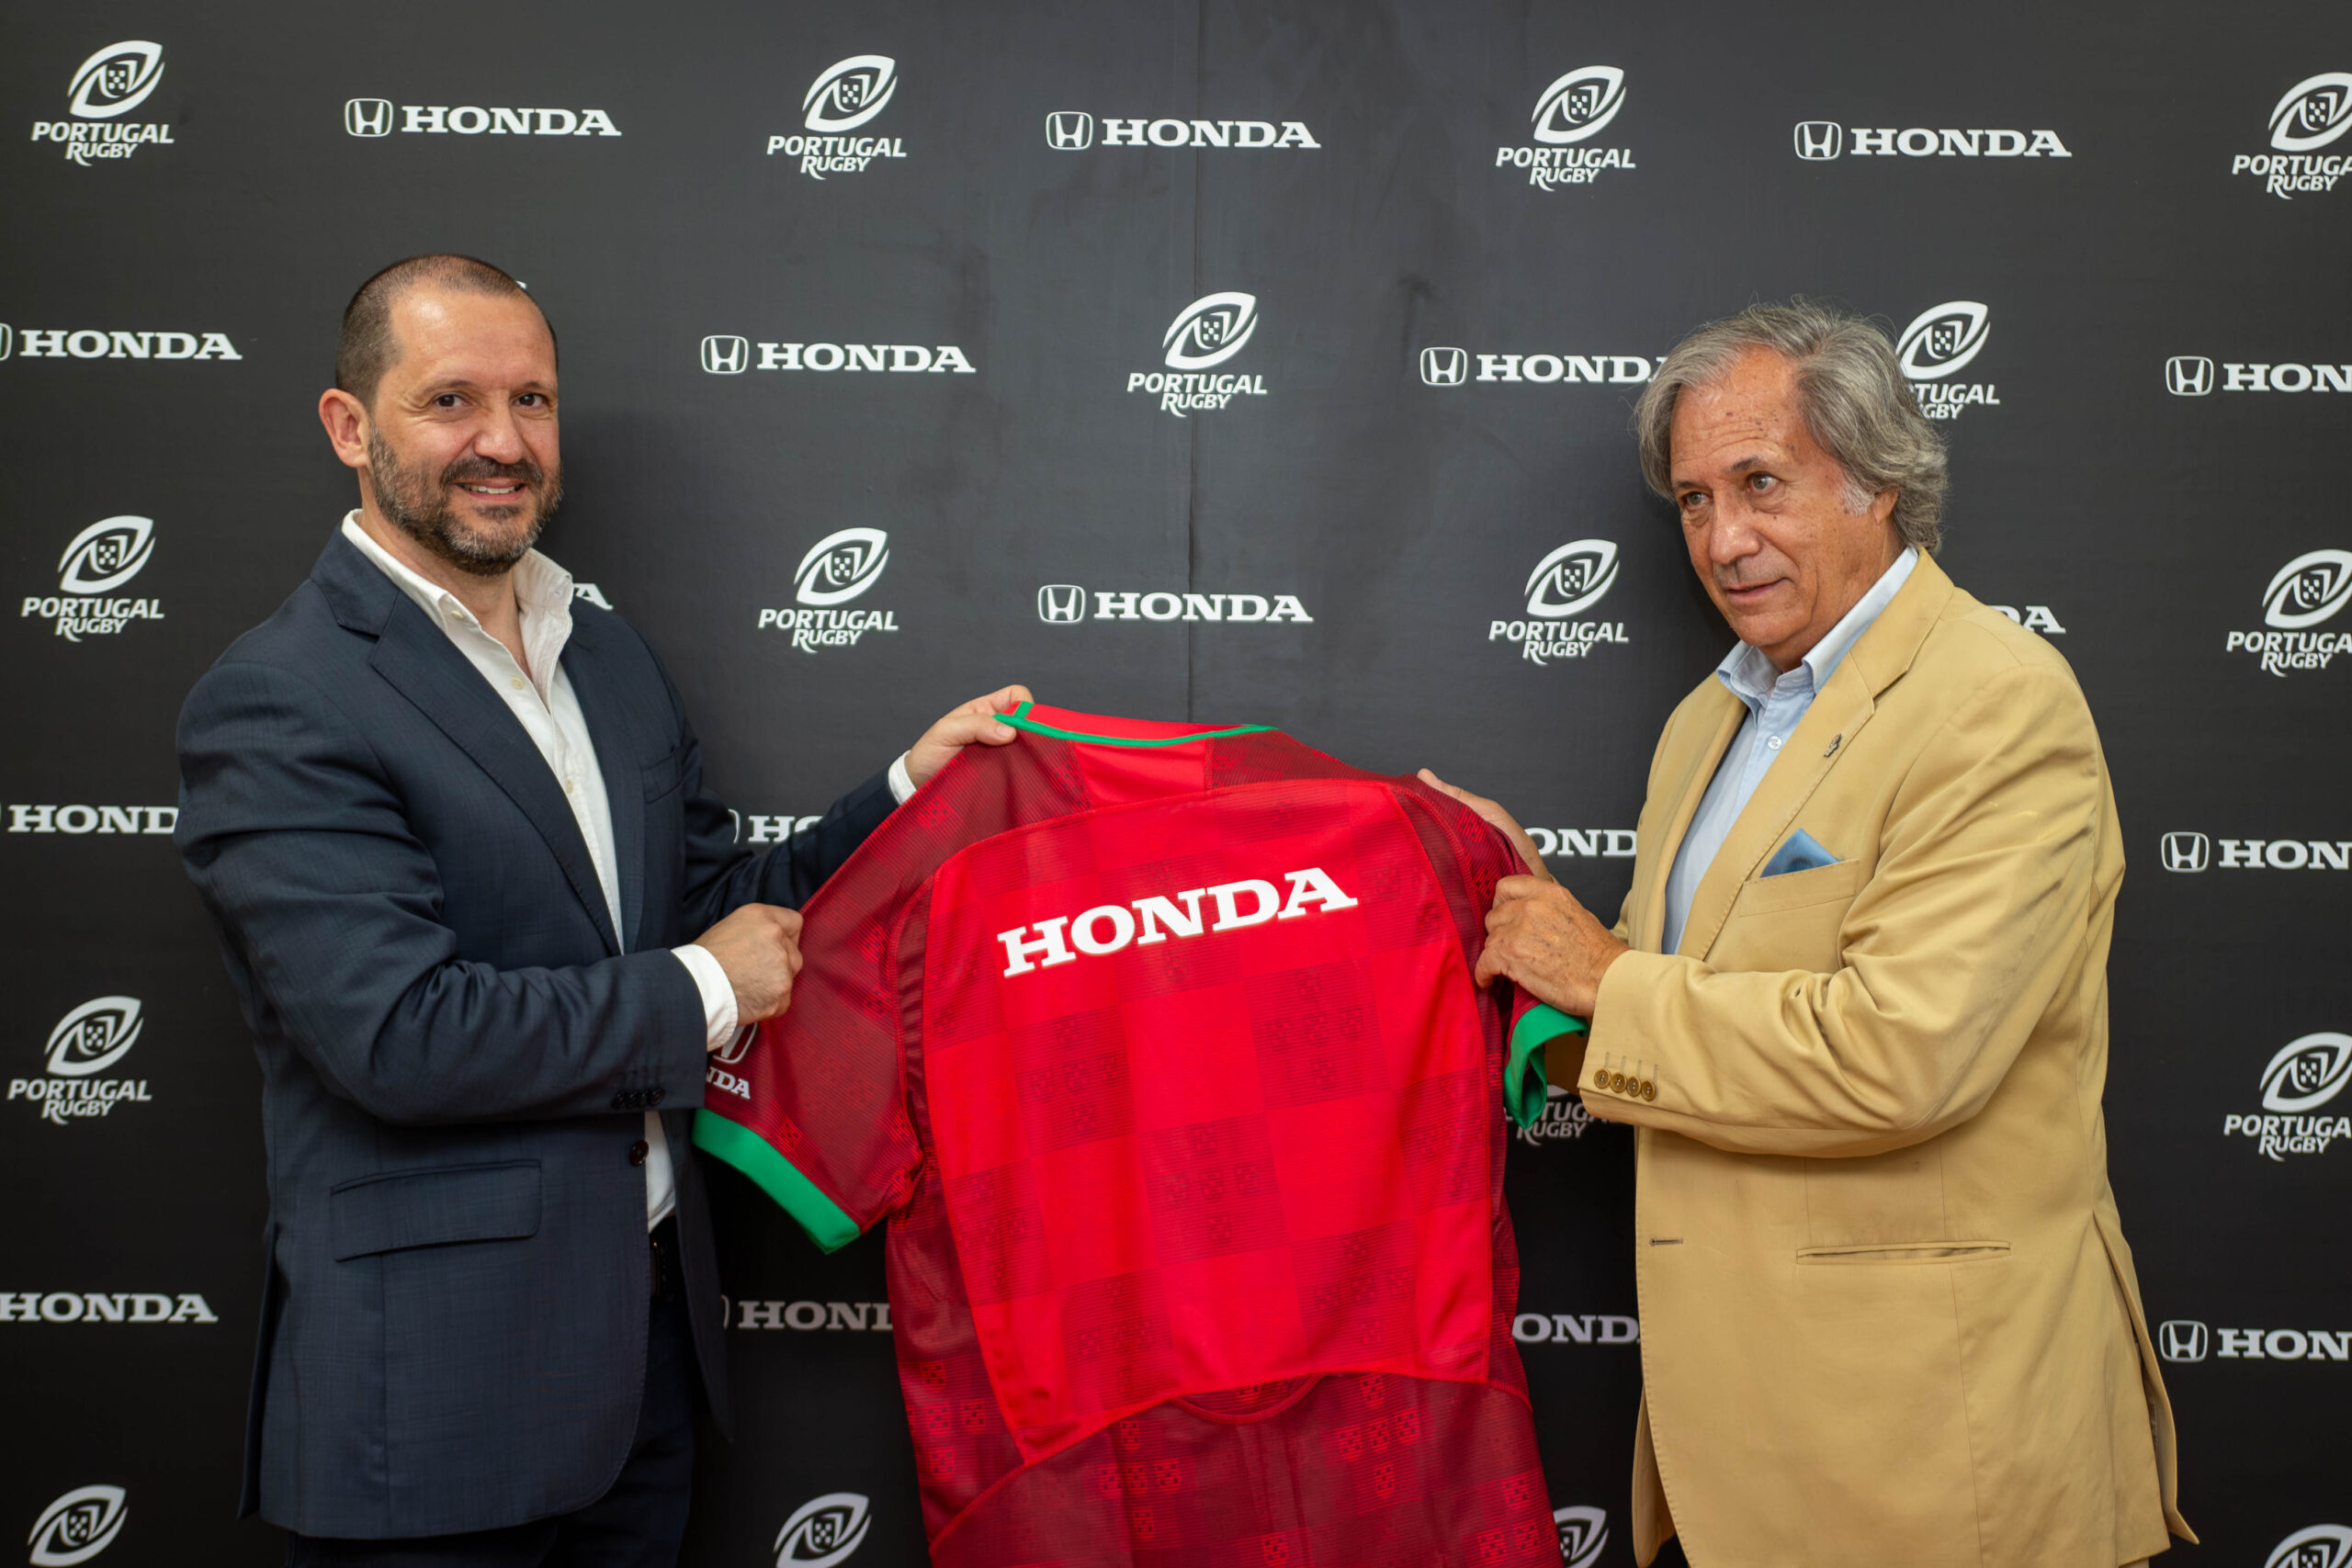 Honda assina acordo de parceria com a Seleção Portuguesa de Rugby